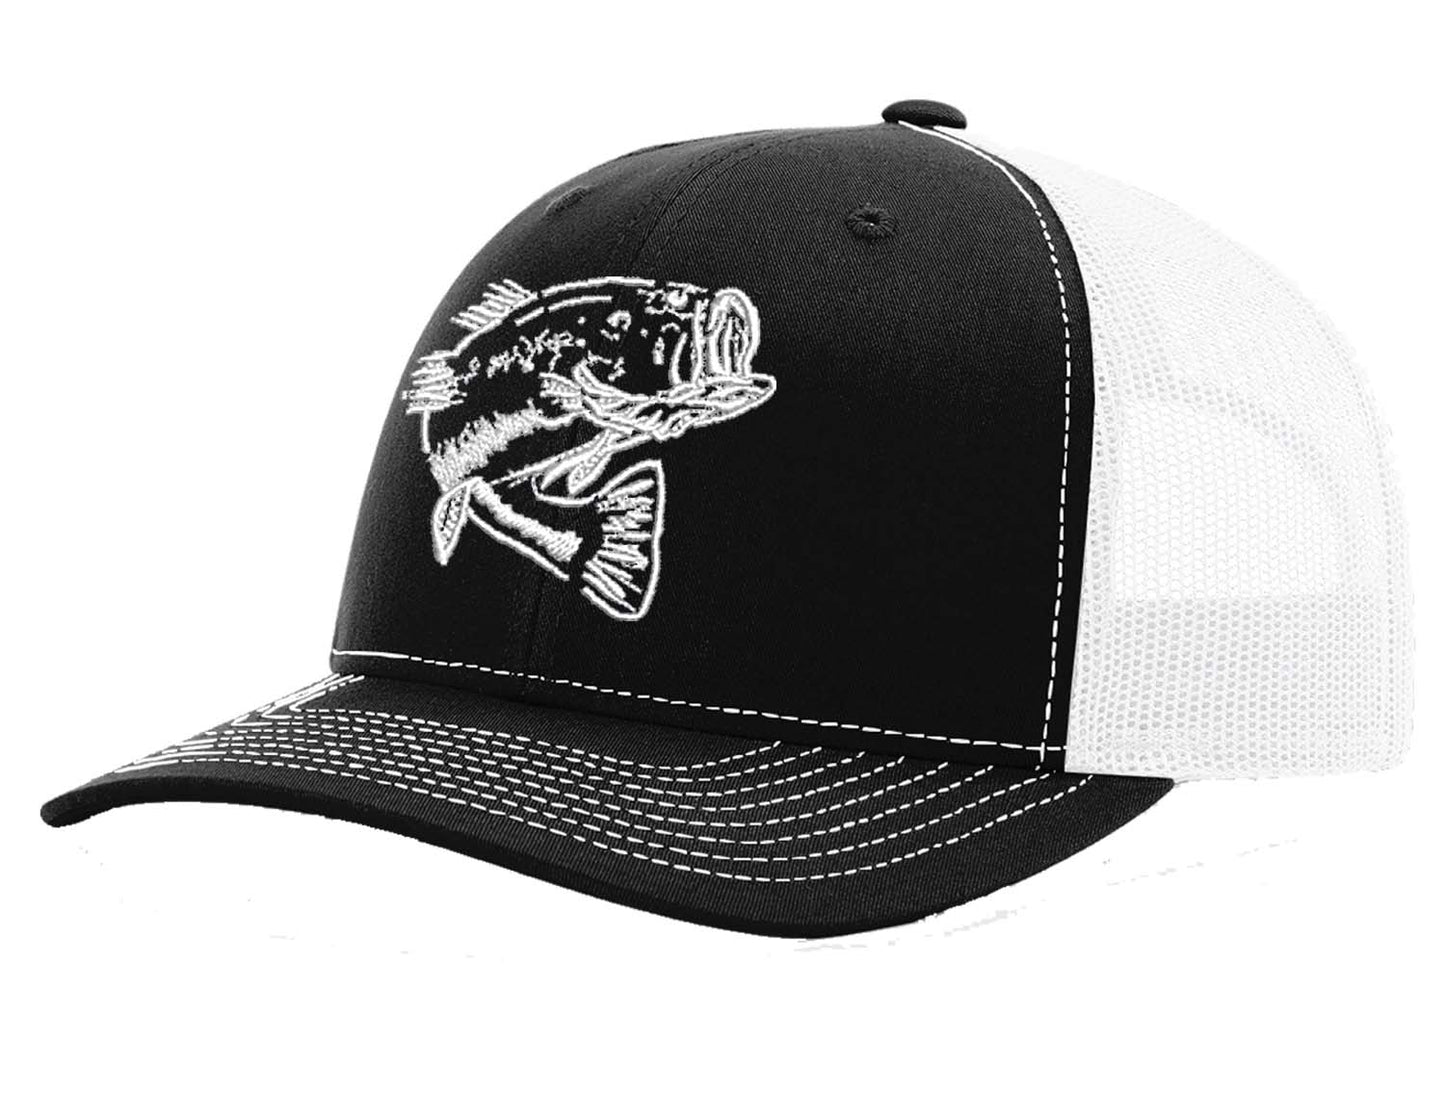 New Bass "Reel Hawg" Structured Trucker Hat - Black/White Mesh - White Bass logo